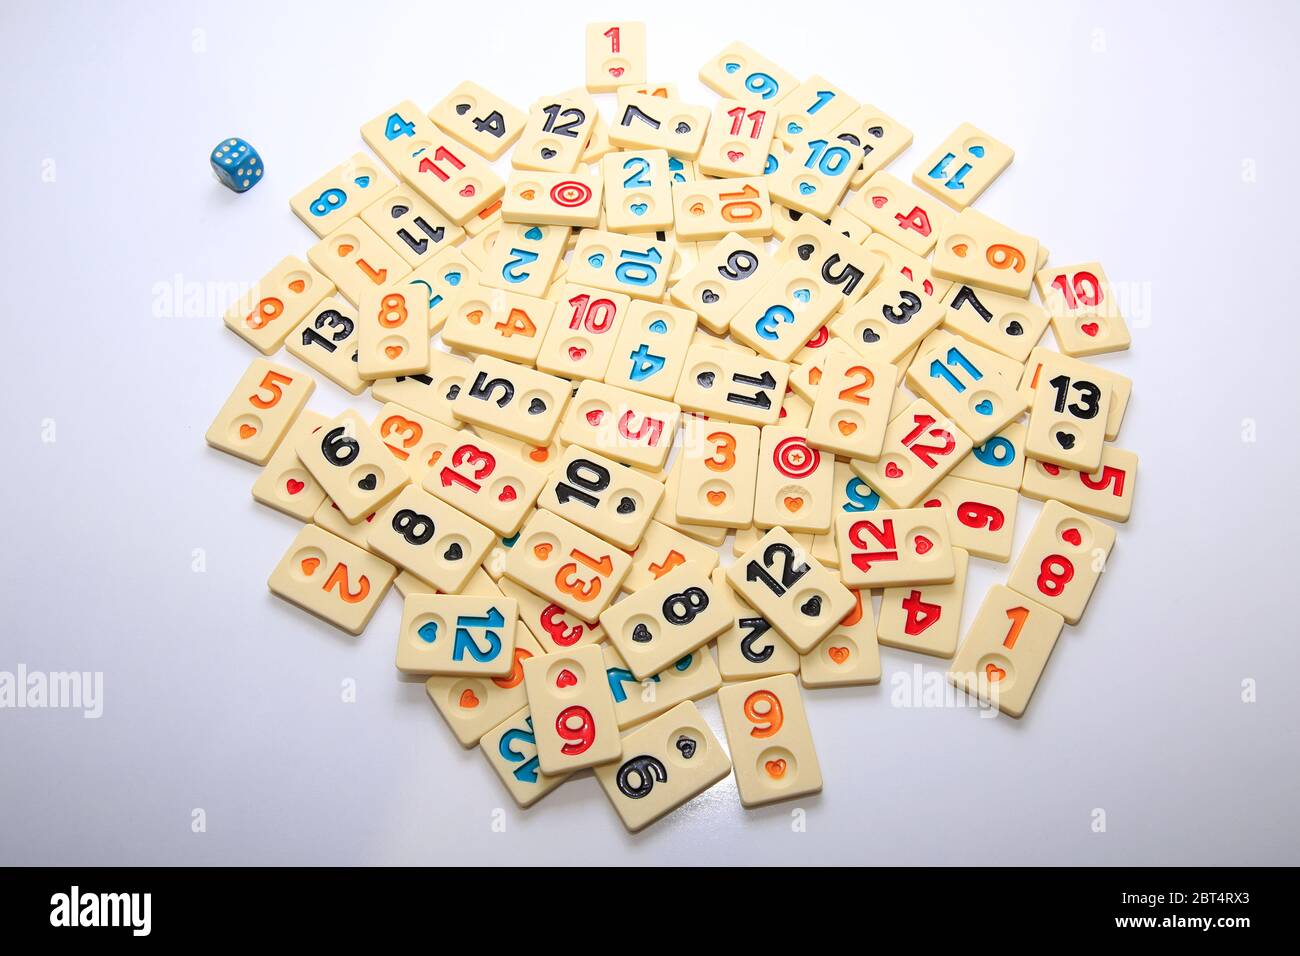 Türkisches Brettspiel Okey (Rummikub). Stack Zusammensetzung mit  Spielsteinen auf weißem Grund Stockfotografie - Alamy